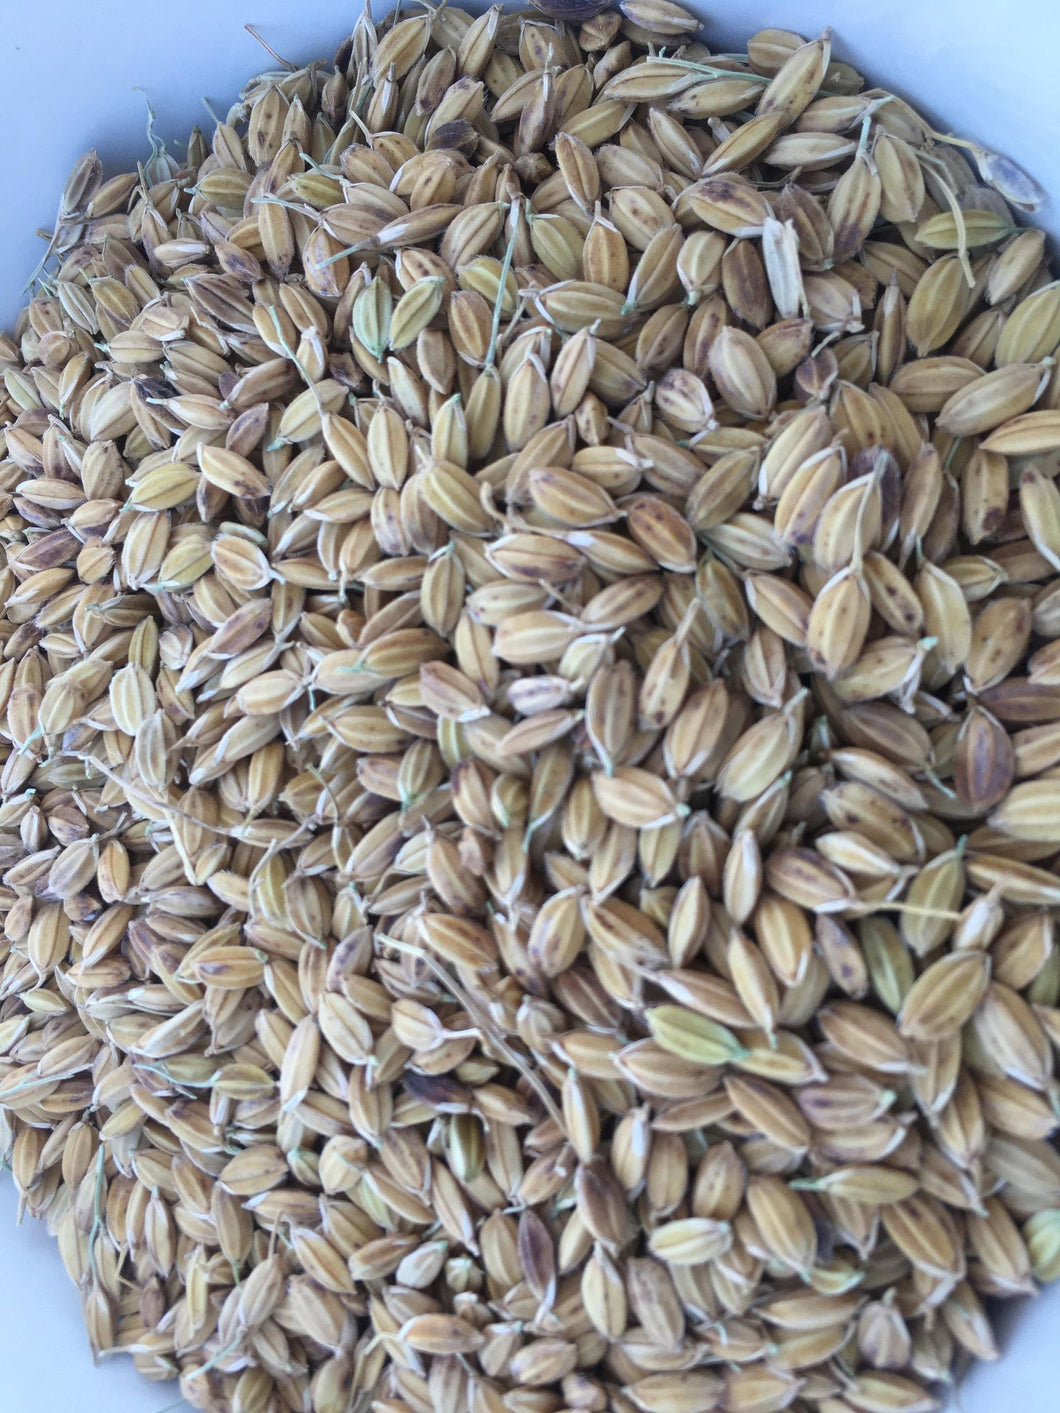 'Zerawchanica' Upland Rice